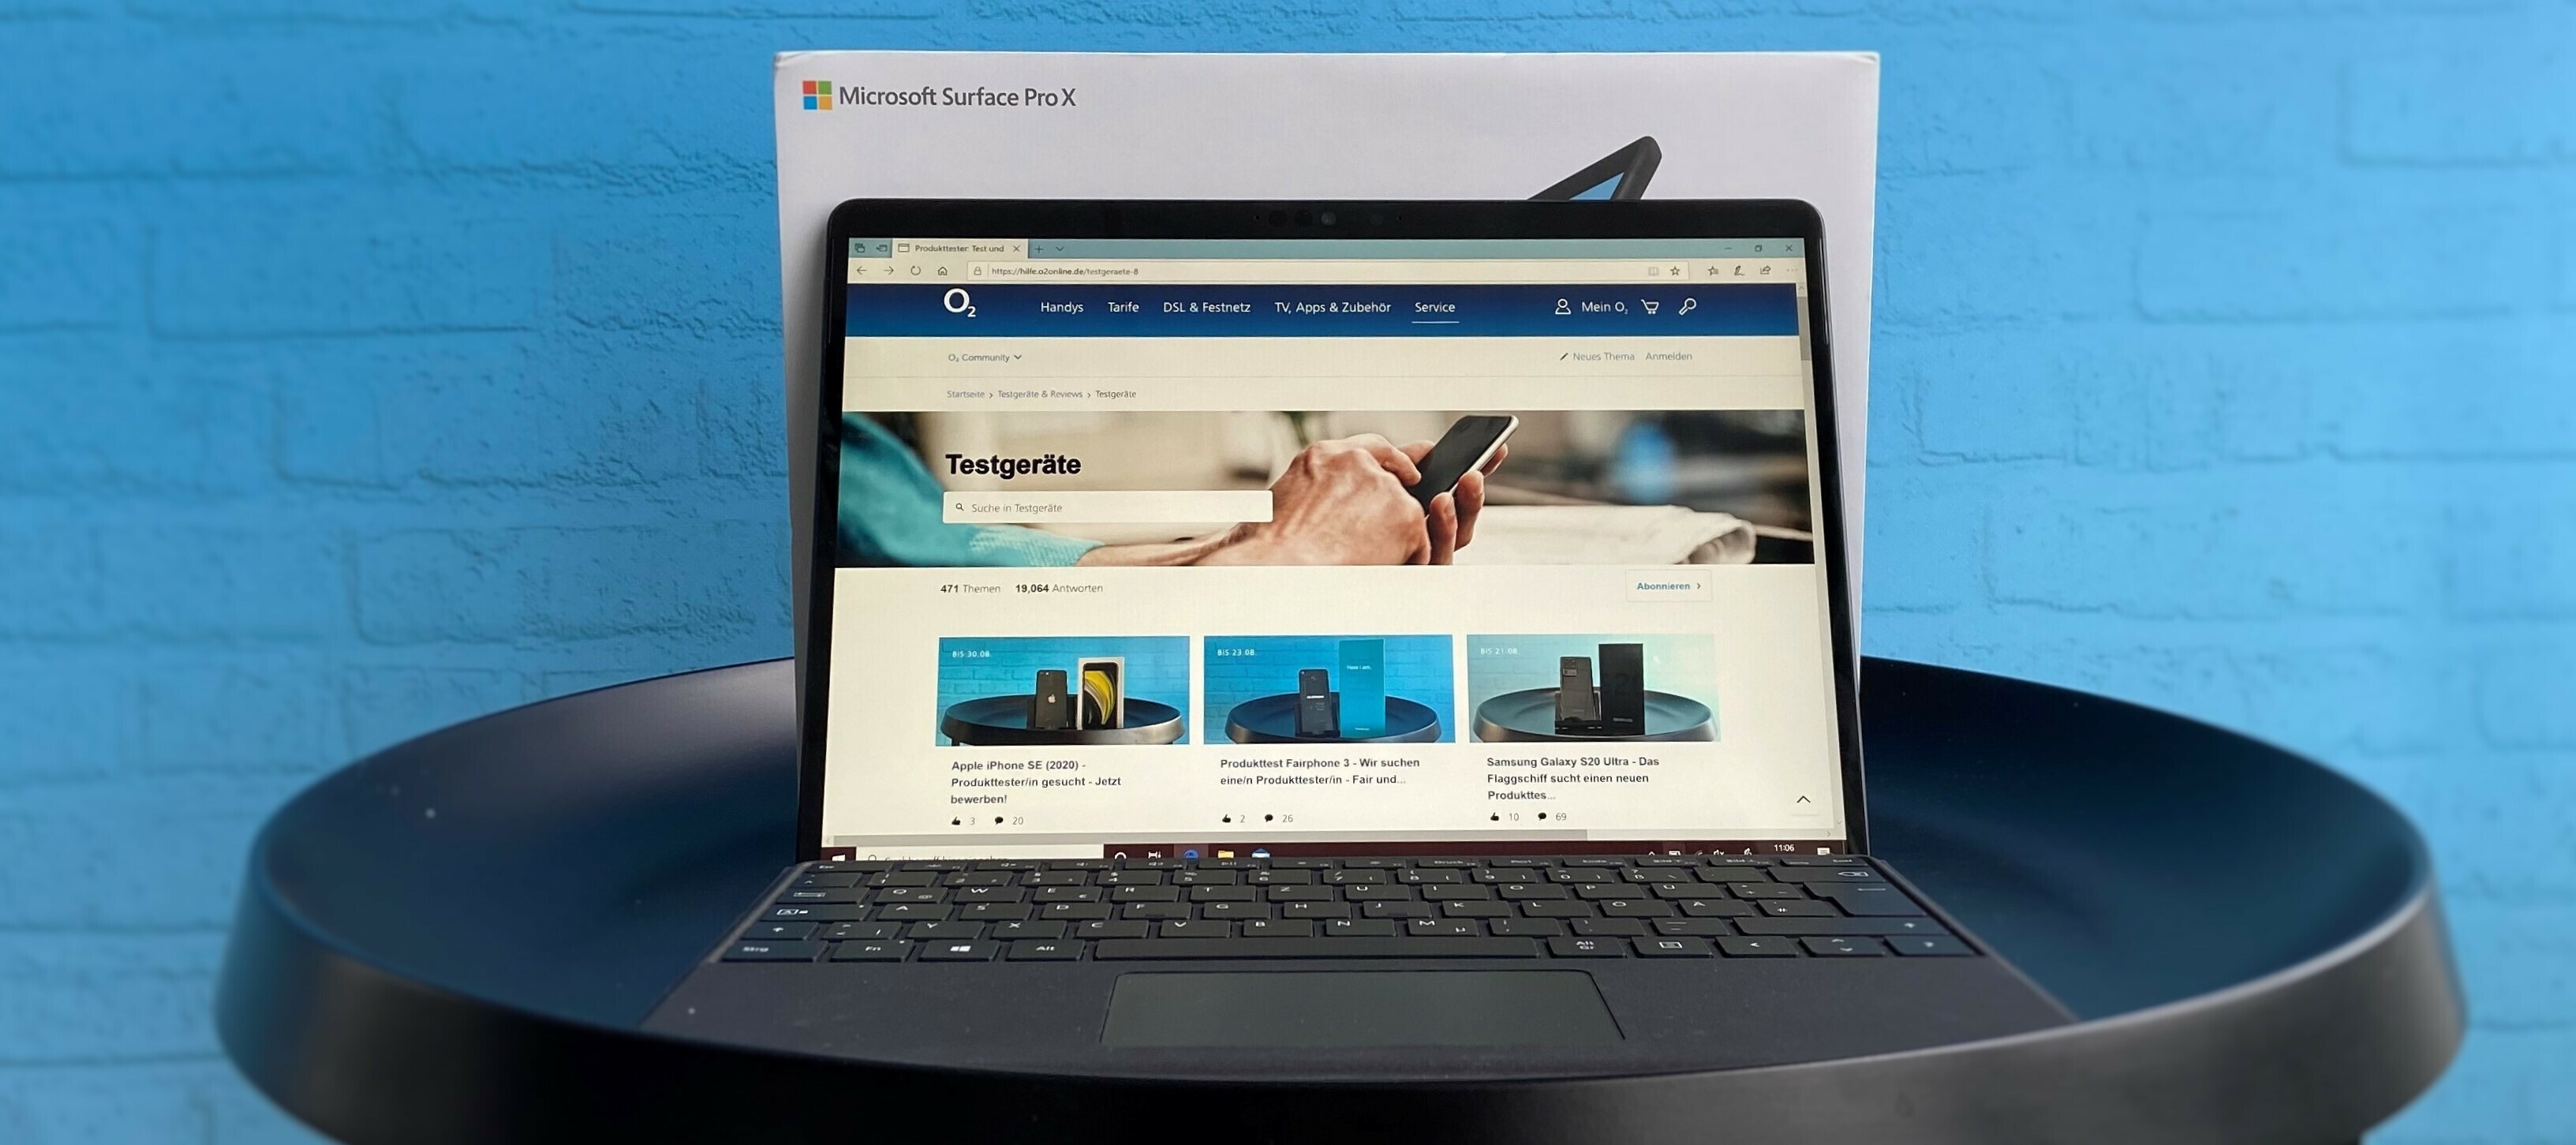 Microsoft Surface Pro X inkl. Signature Keyboard und Slim Pen - Produkttester/in gesucht - jetzt bewerben!